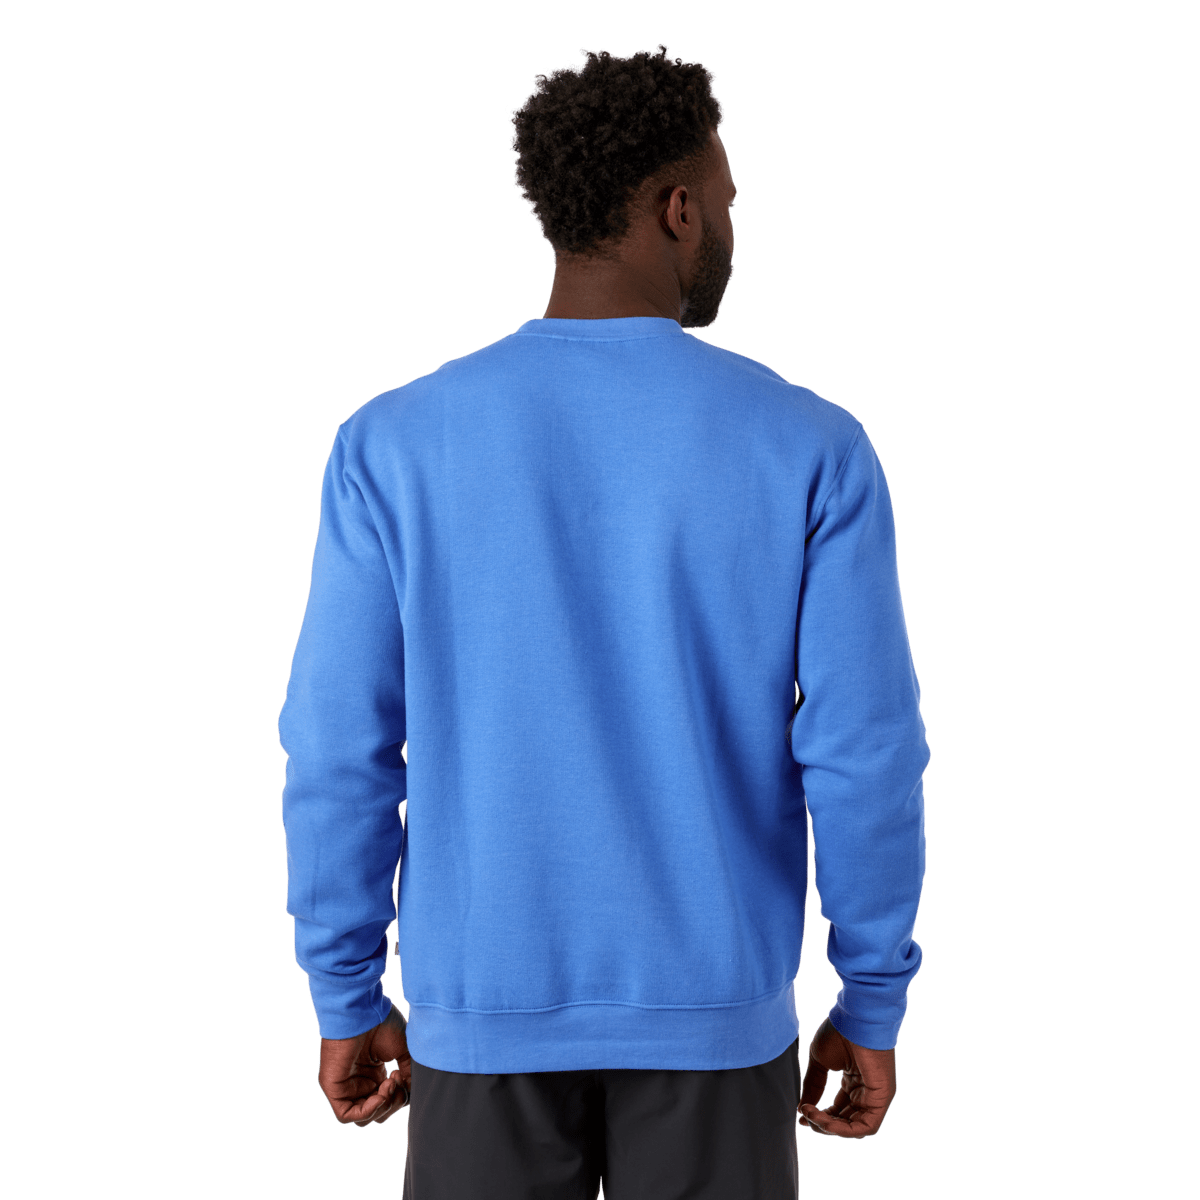 Do Good Crew Sweatshirt - Men's - FINAL SALE